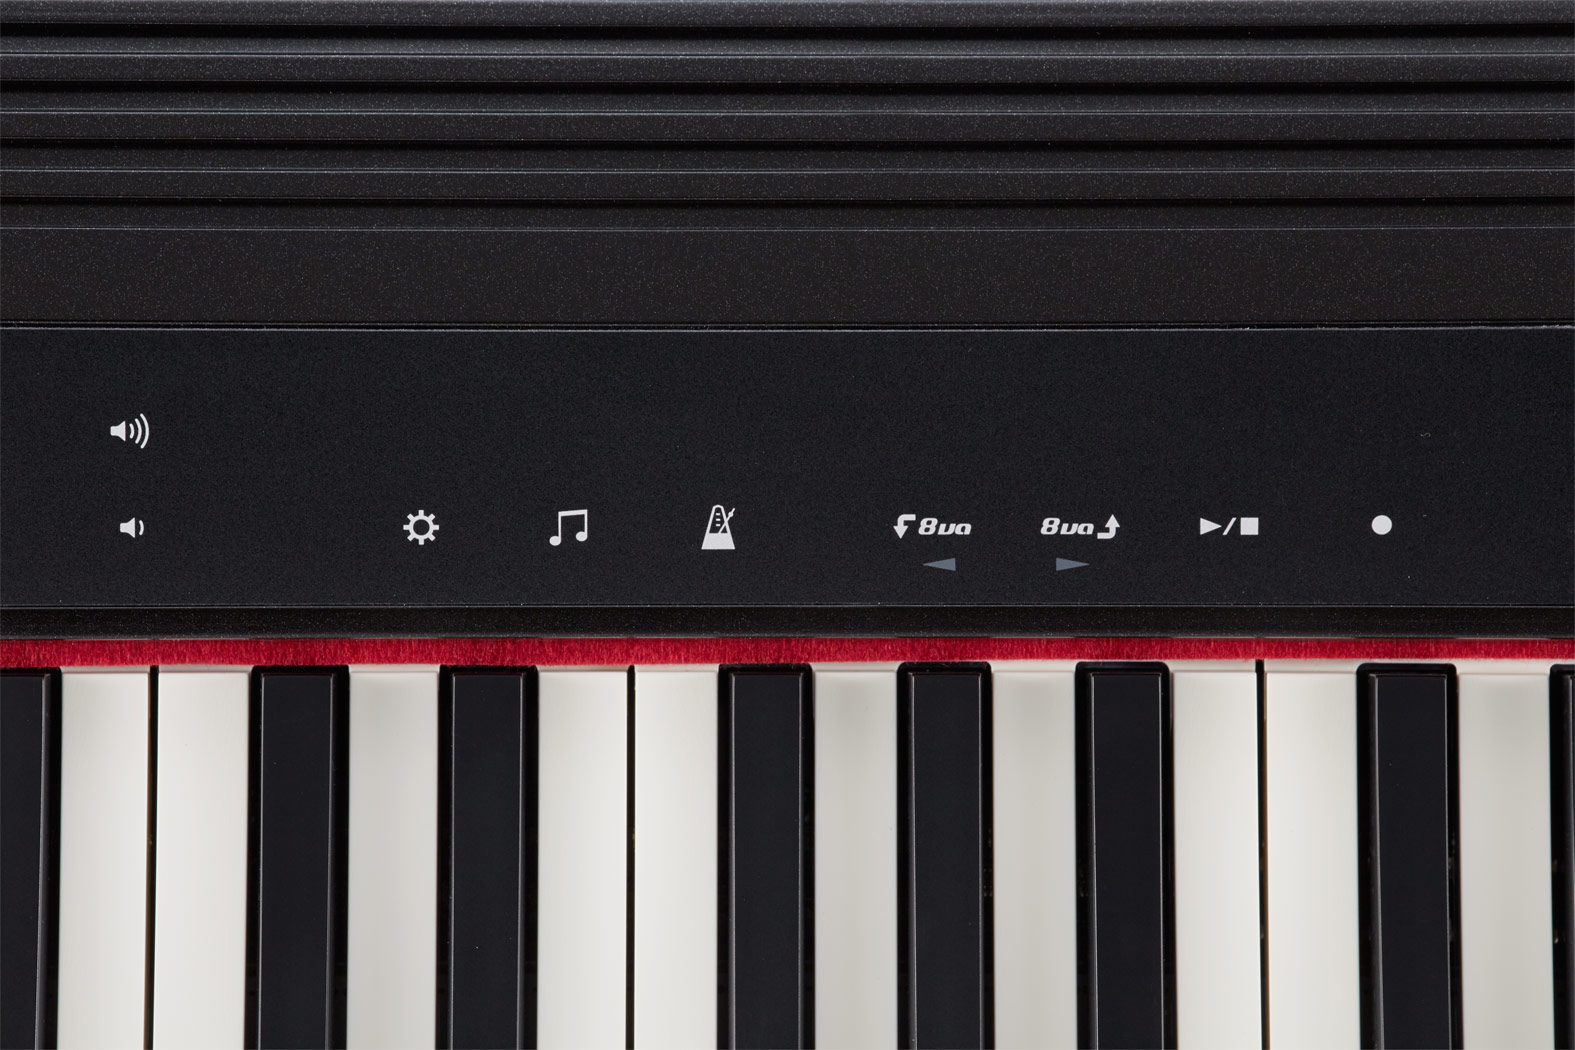 Roland - GO:PIANO | Digital Piano (GO-61P)